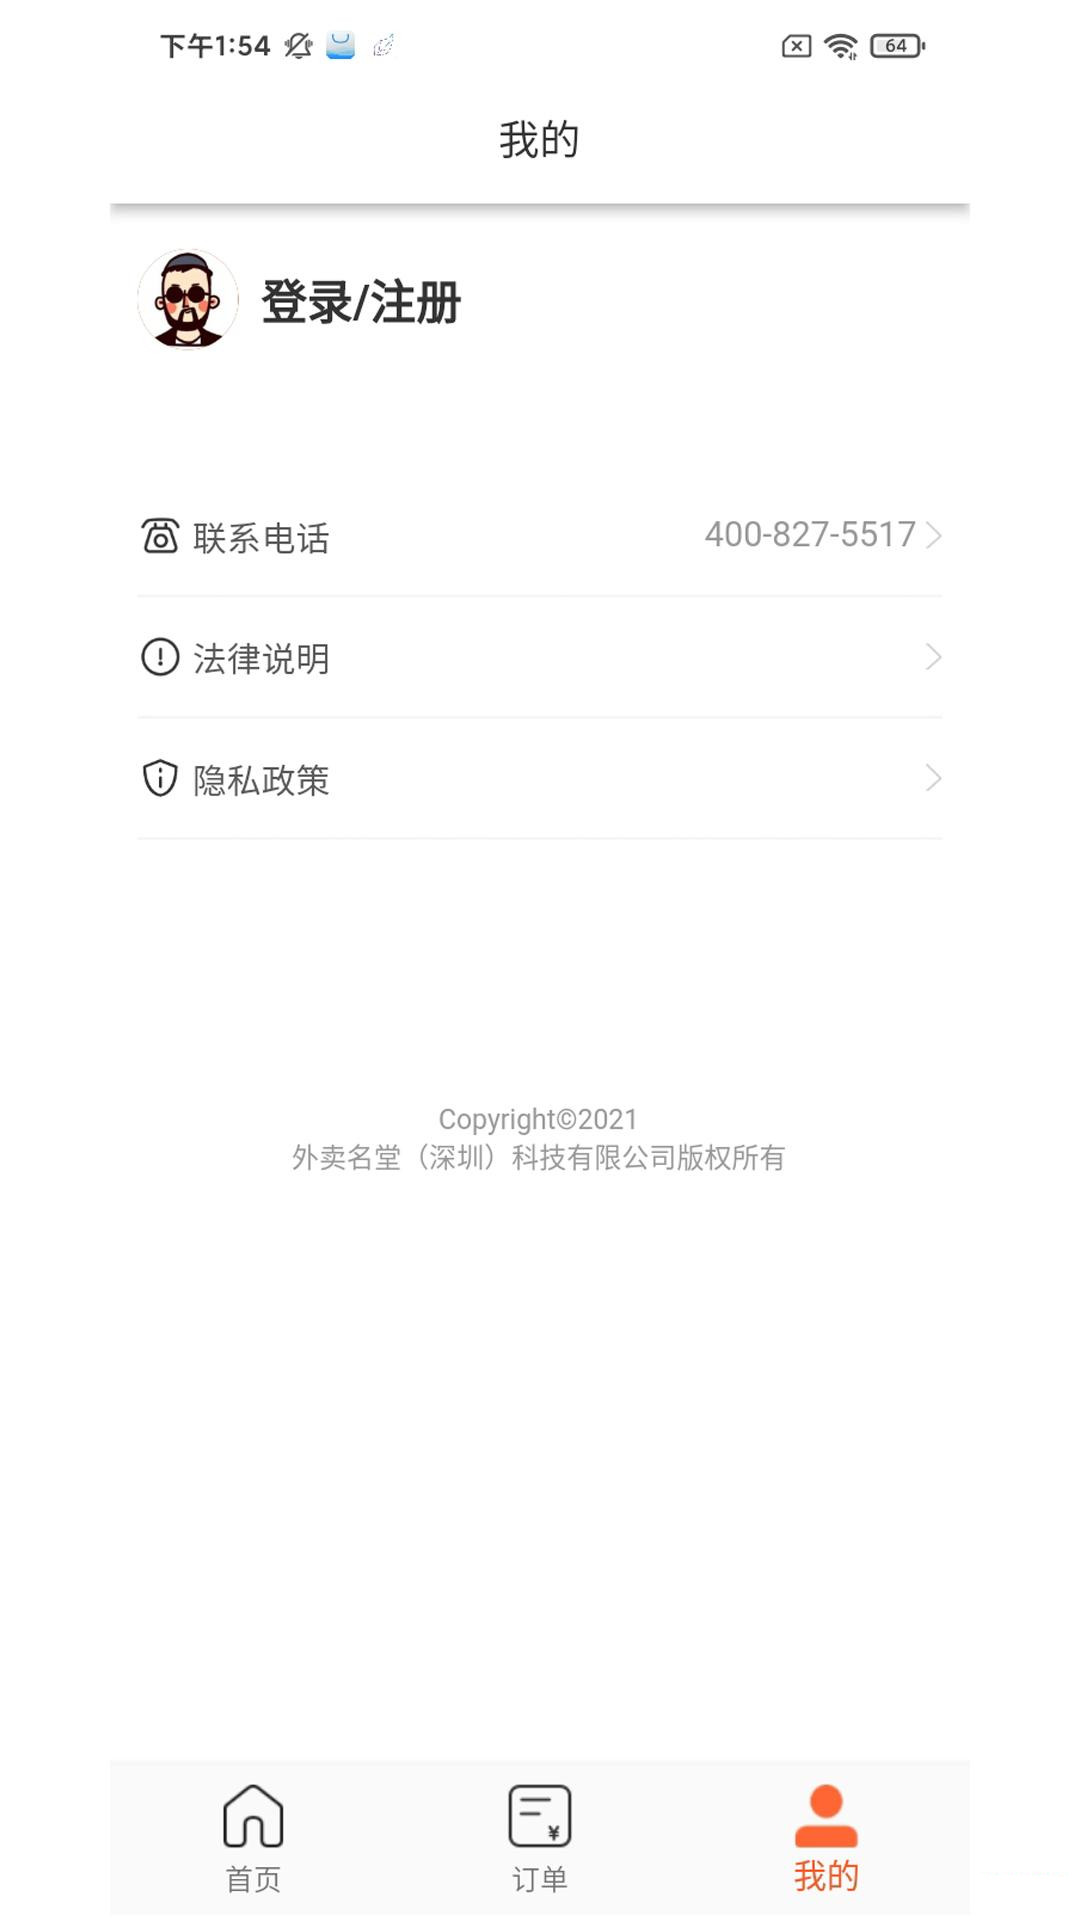 歪麦霸王餐外卖服务app官方下载图片1